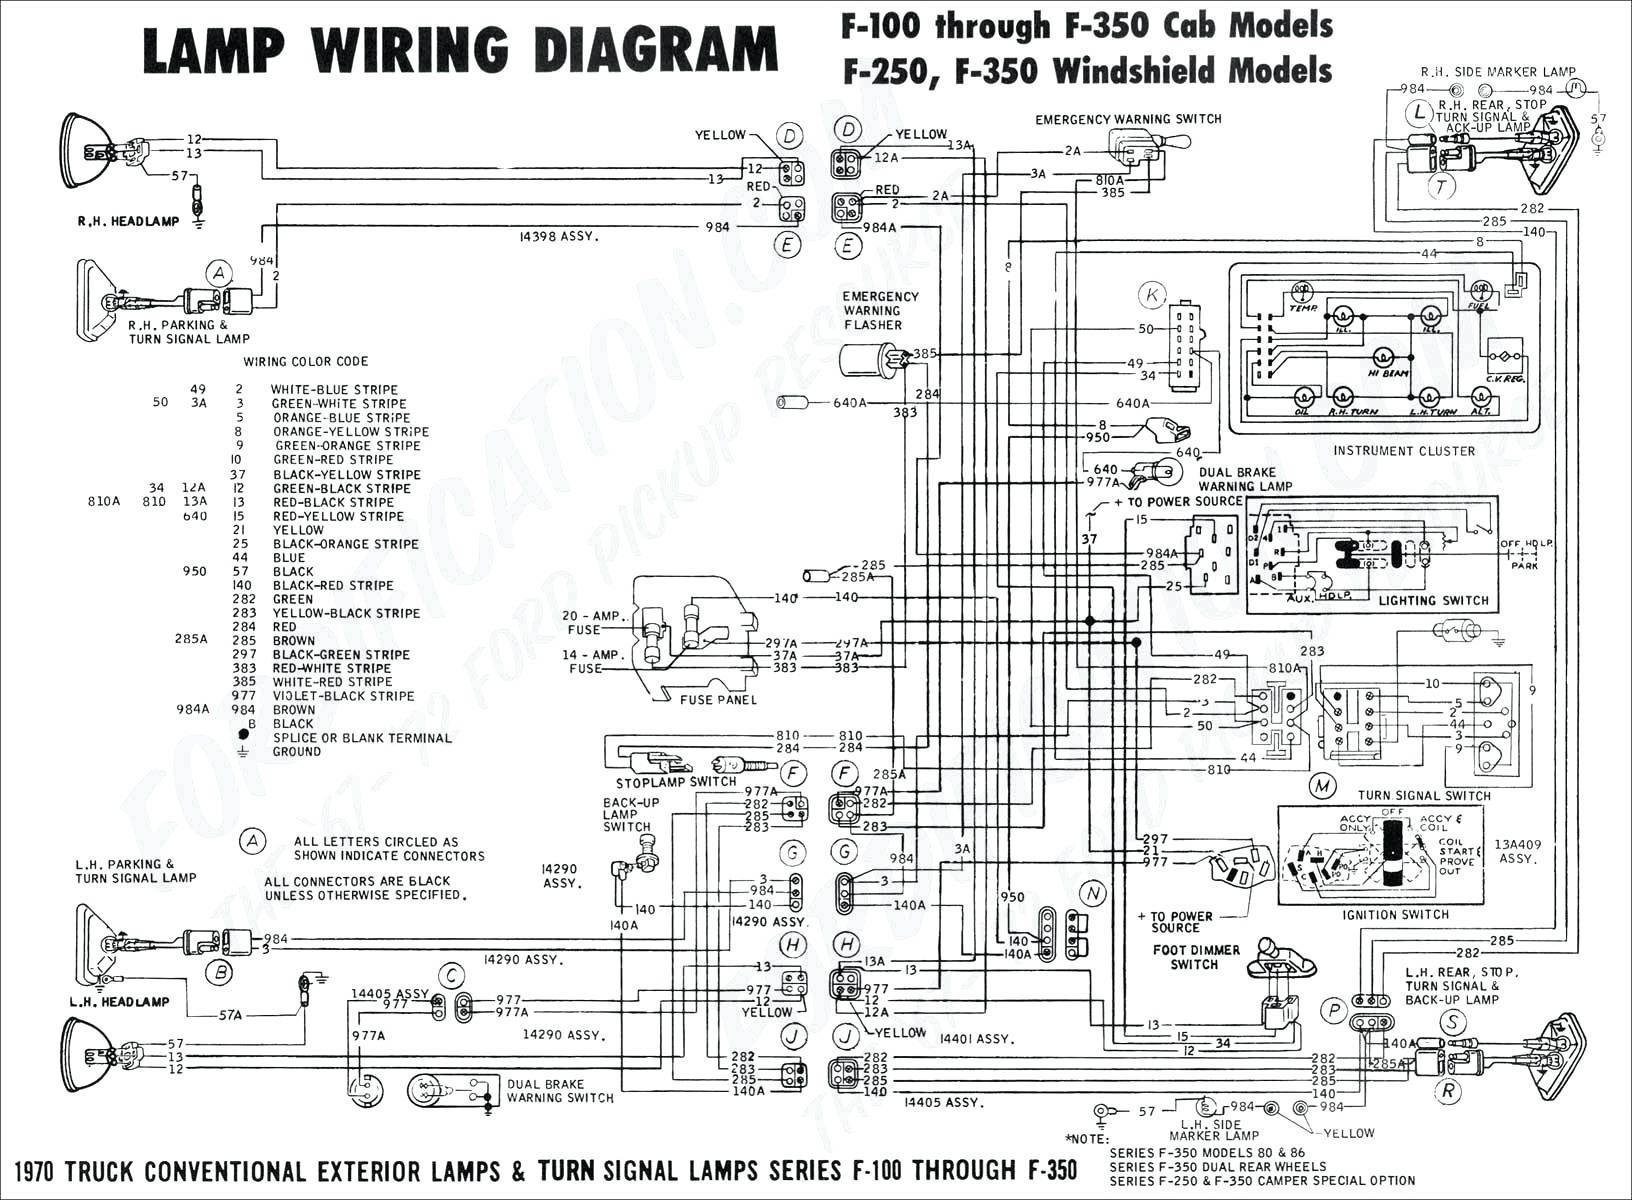 2000 Saab 9 5 Engine Diagram 2001 Saab 9 5 Wiring Diagram Wiring Diagram Datasource Of 2000 Saab 9 5 Engine Diagram